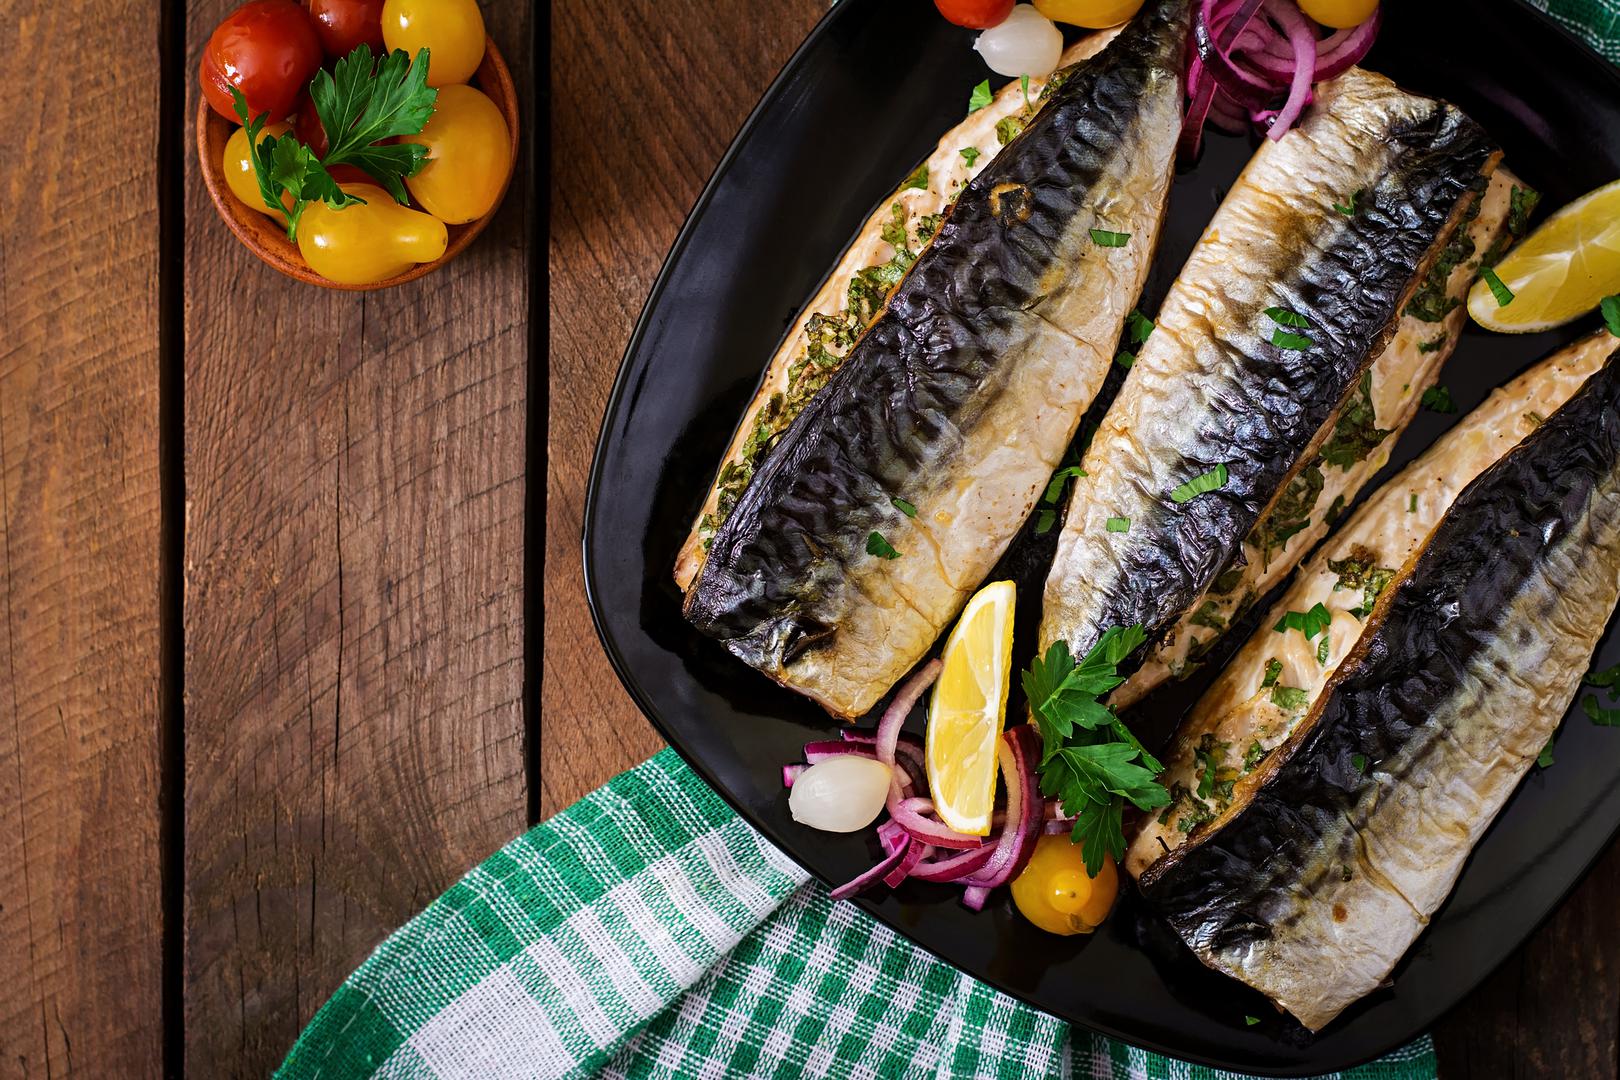 Riba – vrhunski izvor omega-3 masnih kiselina. Plava riba, u koju se ubrajaju tuna, skuša, papalina, srdela i palamida, obiluje selenom. I morski plodovi kamenice i rakovi također su bogati cinkom. Cink smanjuje produkciju masnoća i može biti efikasan u kontroli stvaranja novih akni kao u i liječenju postojećih.